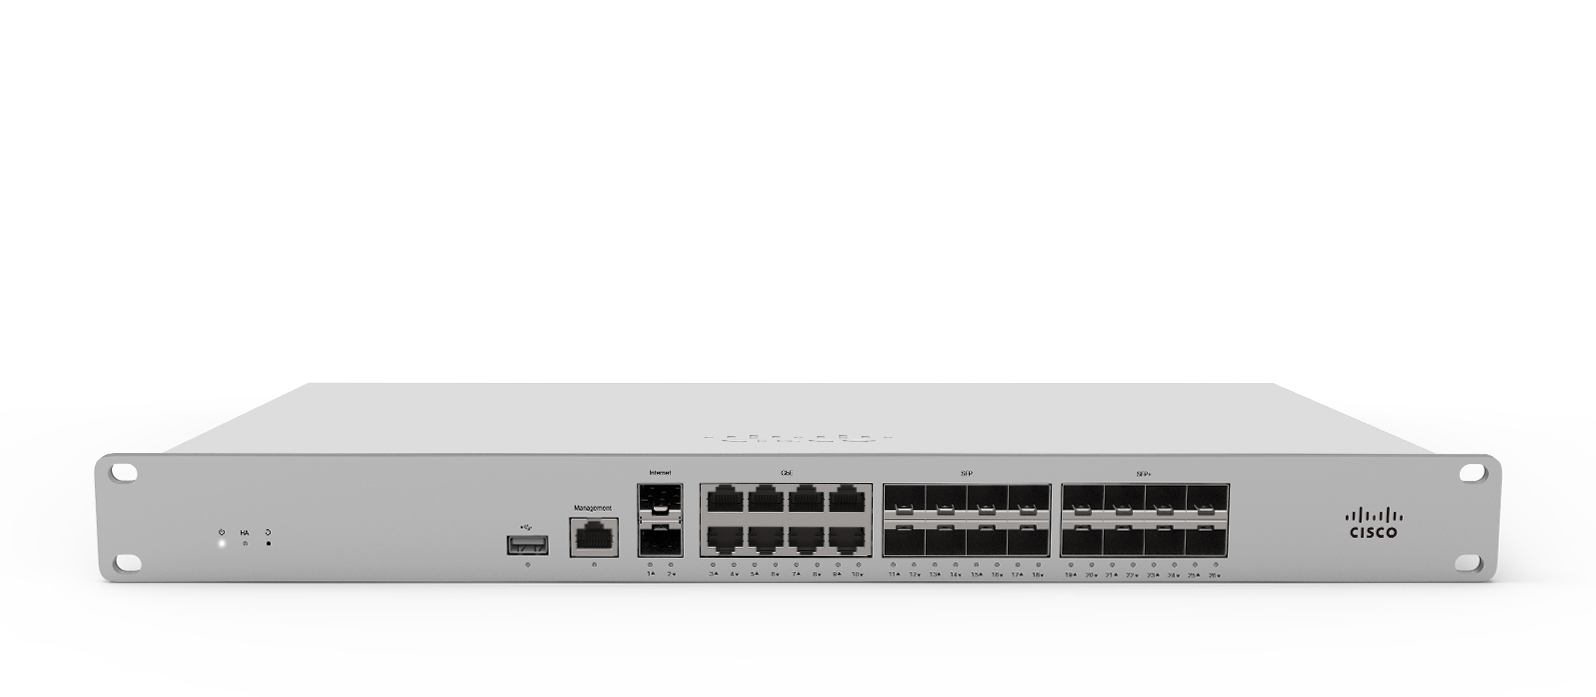 Cisco Meraki MX250 hardware firewall 1U 4000 Mbit/s